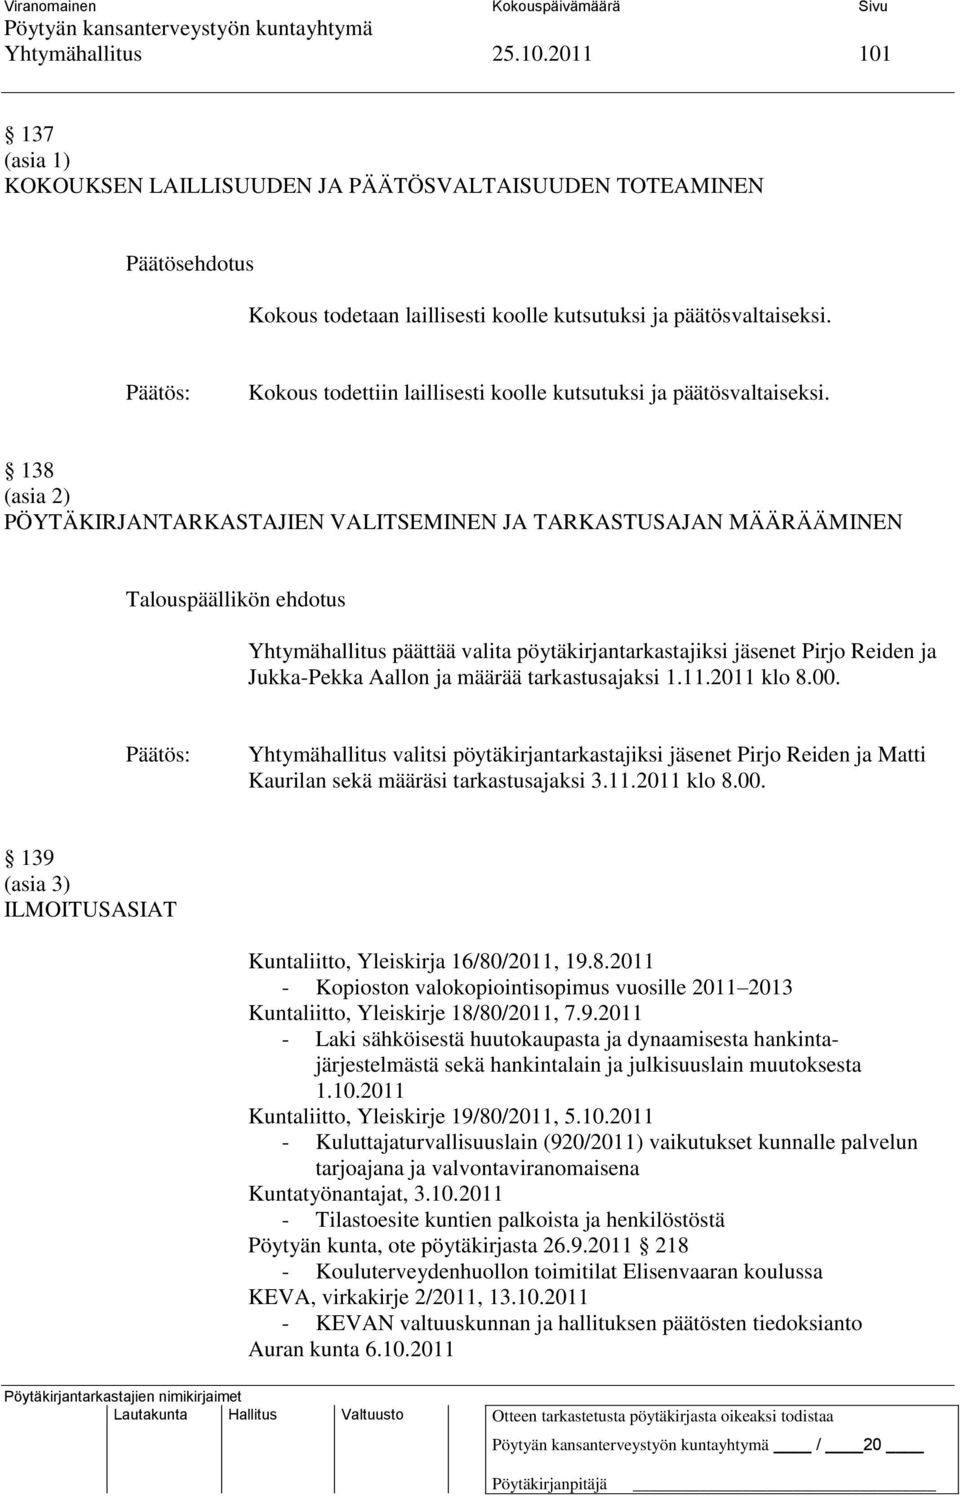 138 (asia 2) PÖYTÄKIRJANTARKASTAJIEN VALITSEMINEN JA TARKASTUSAJAN MÄÄRÄÄMINEN Yhtymähallitus päättää valita pöytäkirjantarkastajiksi jäsenet Pirjo Reiden ja Jukka-Pekka Aallon ja määrää